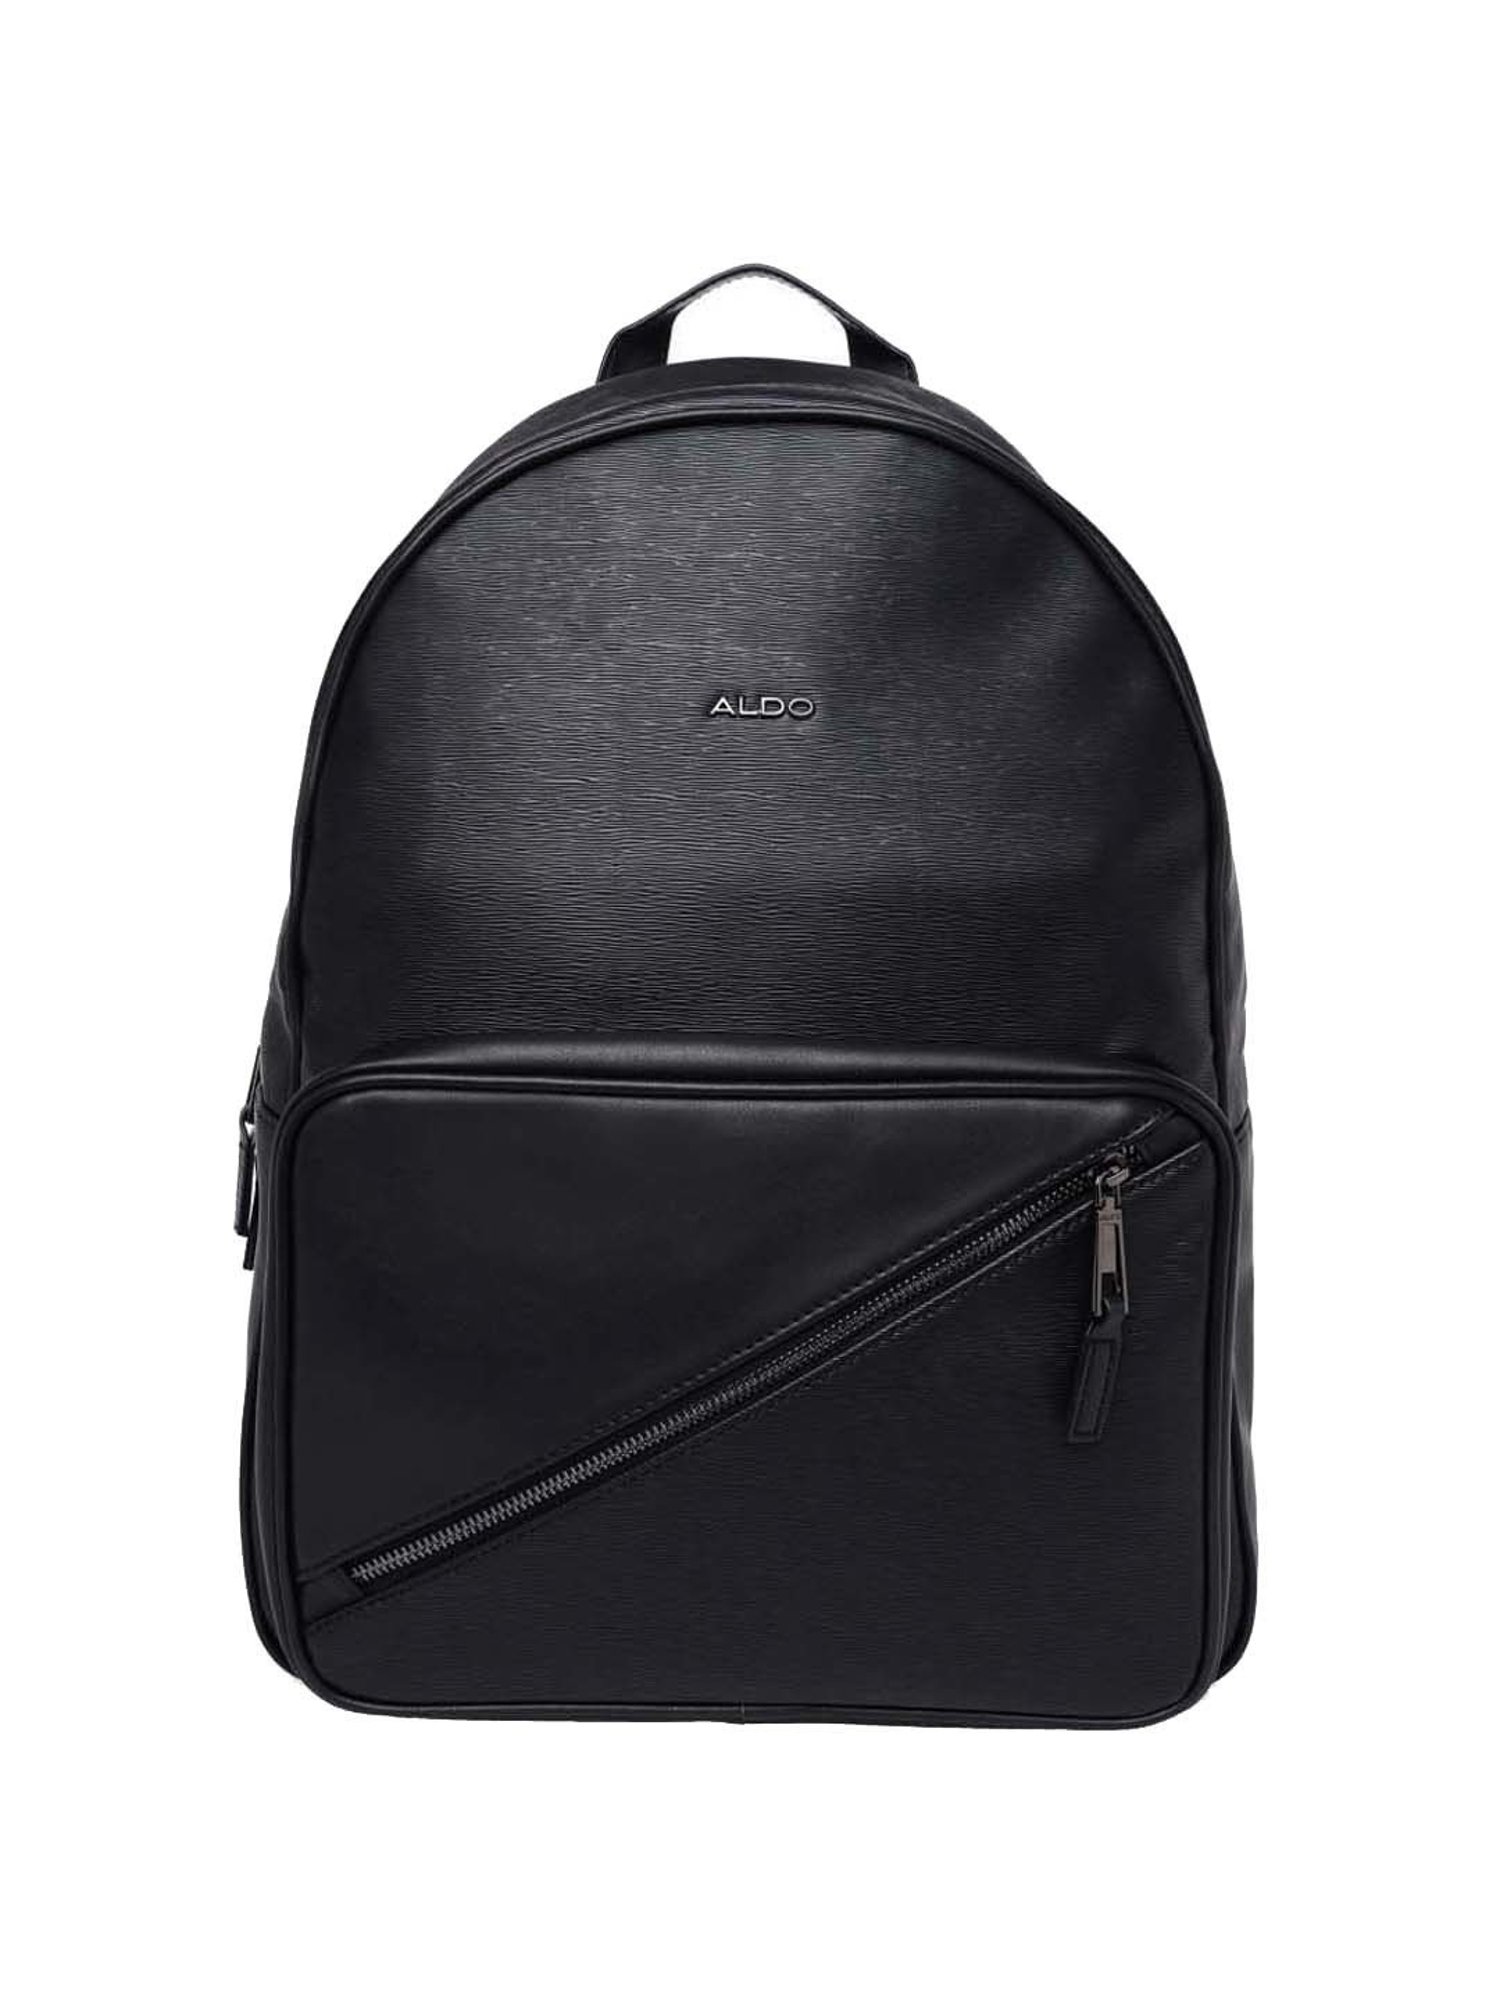 ALDO Adjustable Straps Backpacks for Women | Mercari